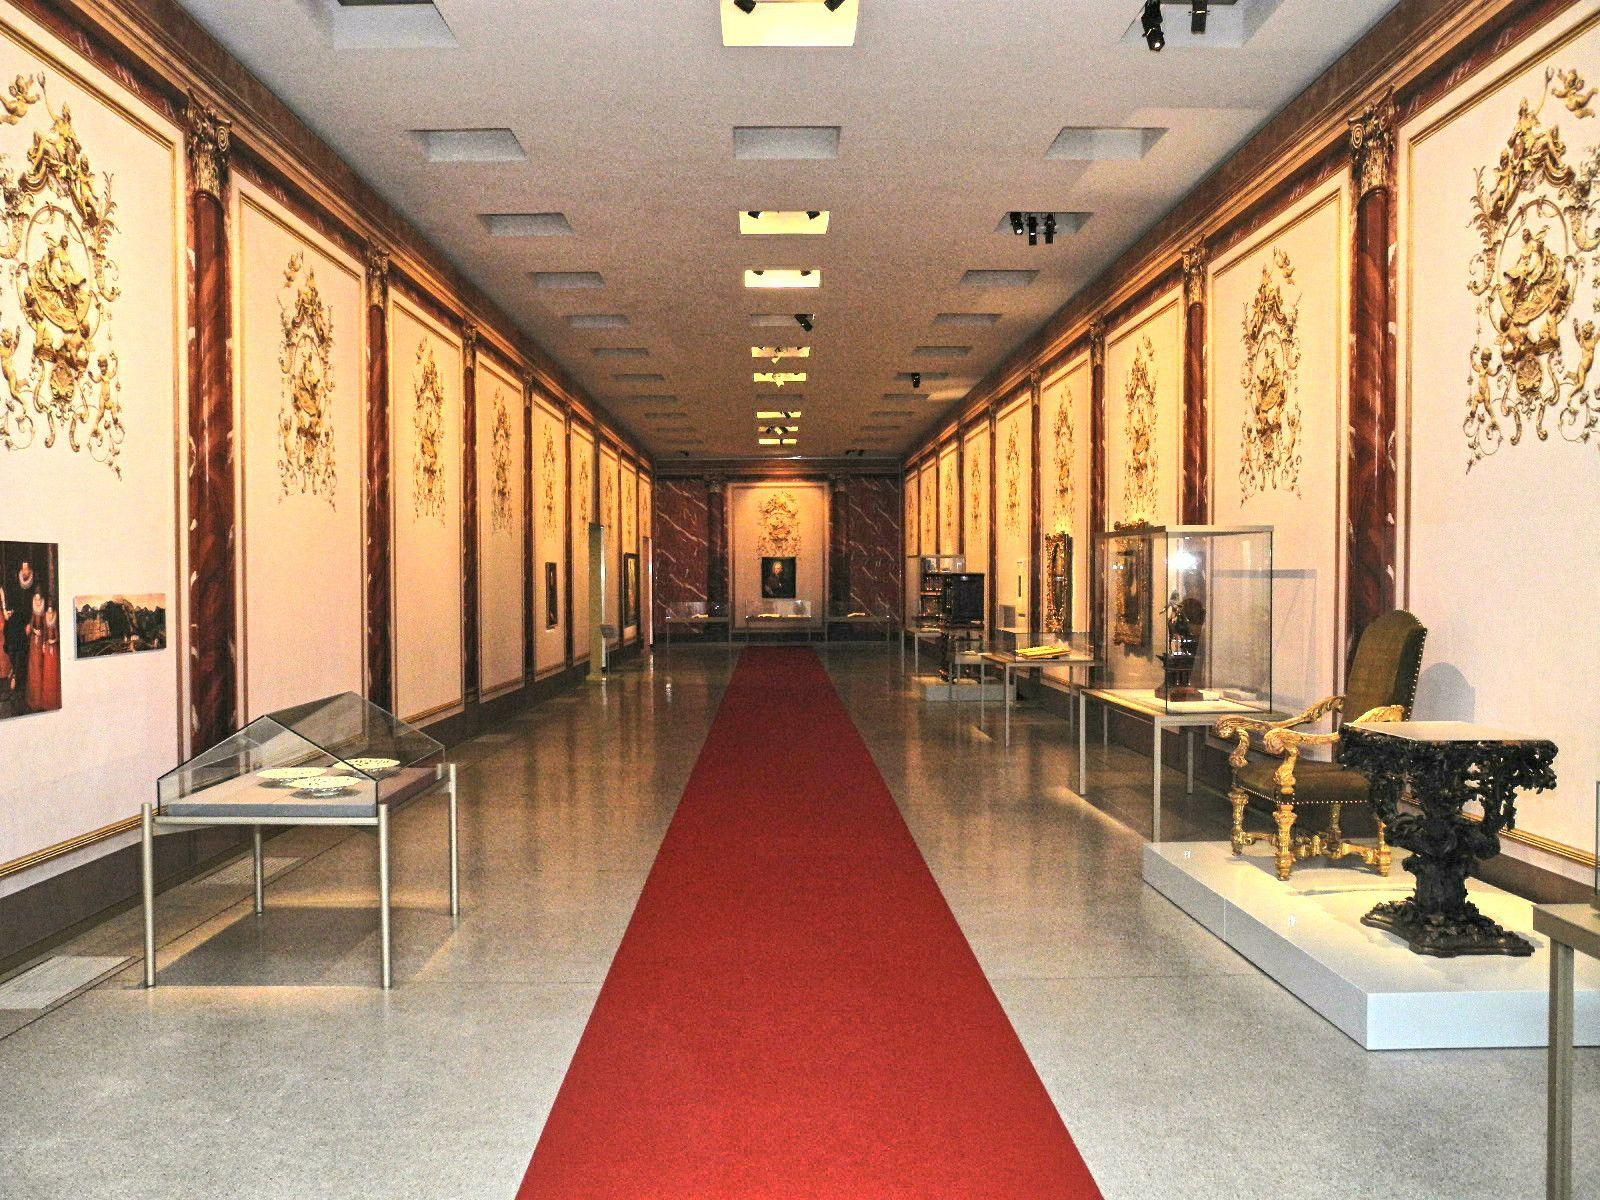 Der rote Teppich dient als Faden durch die Geschichte das Werden des Fürstentum Liechtenstein im Landesmuseum